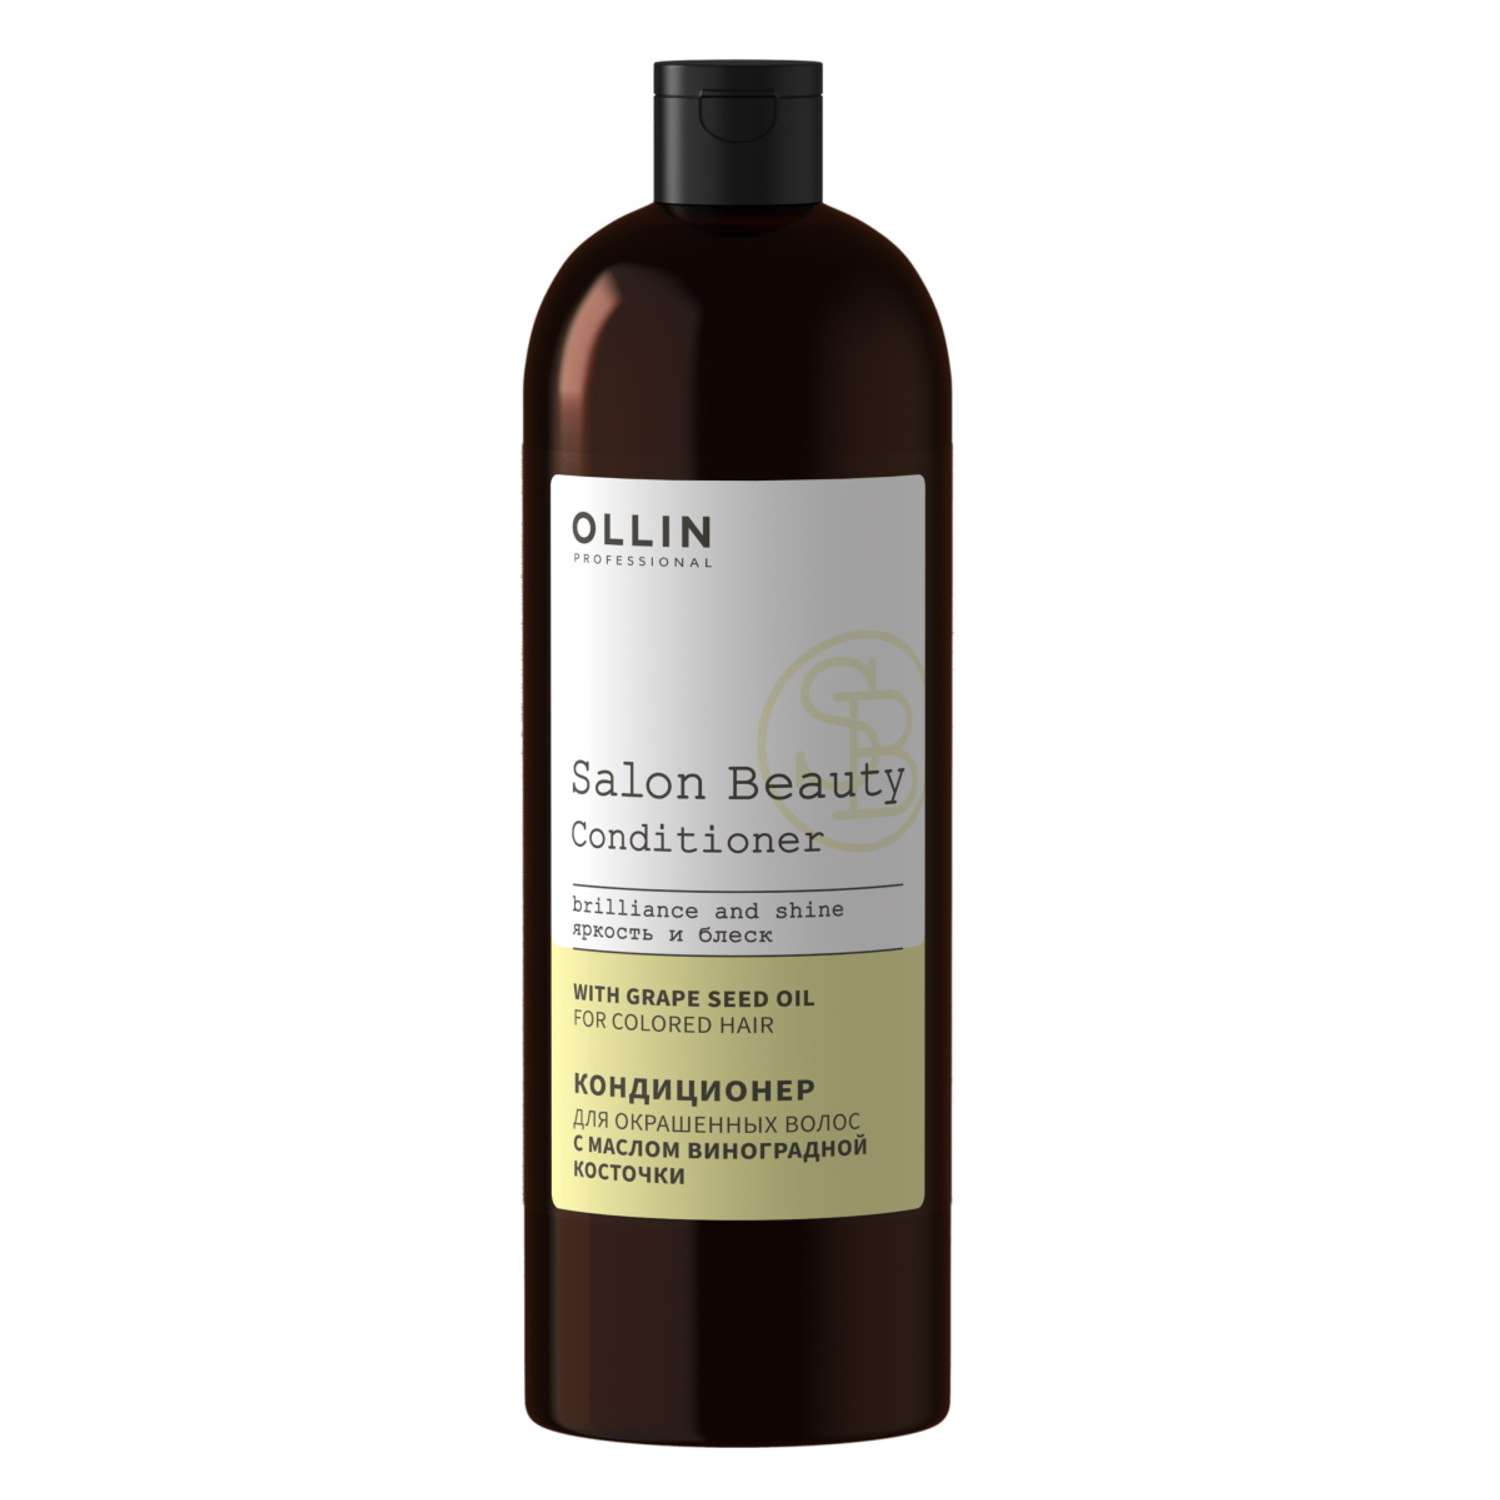 Кондиционер Ollin salon beauty для окрашенных волос с маслом виноградной косточки 1000 мл - фото 1